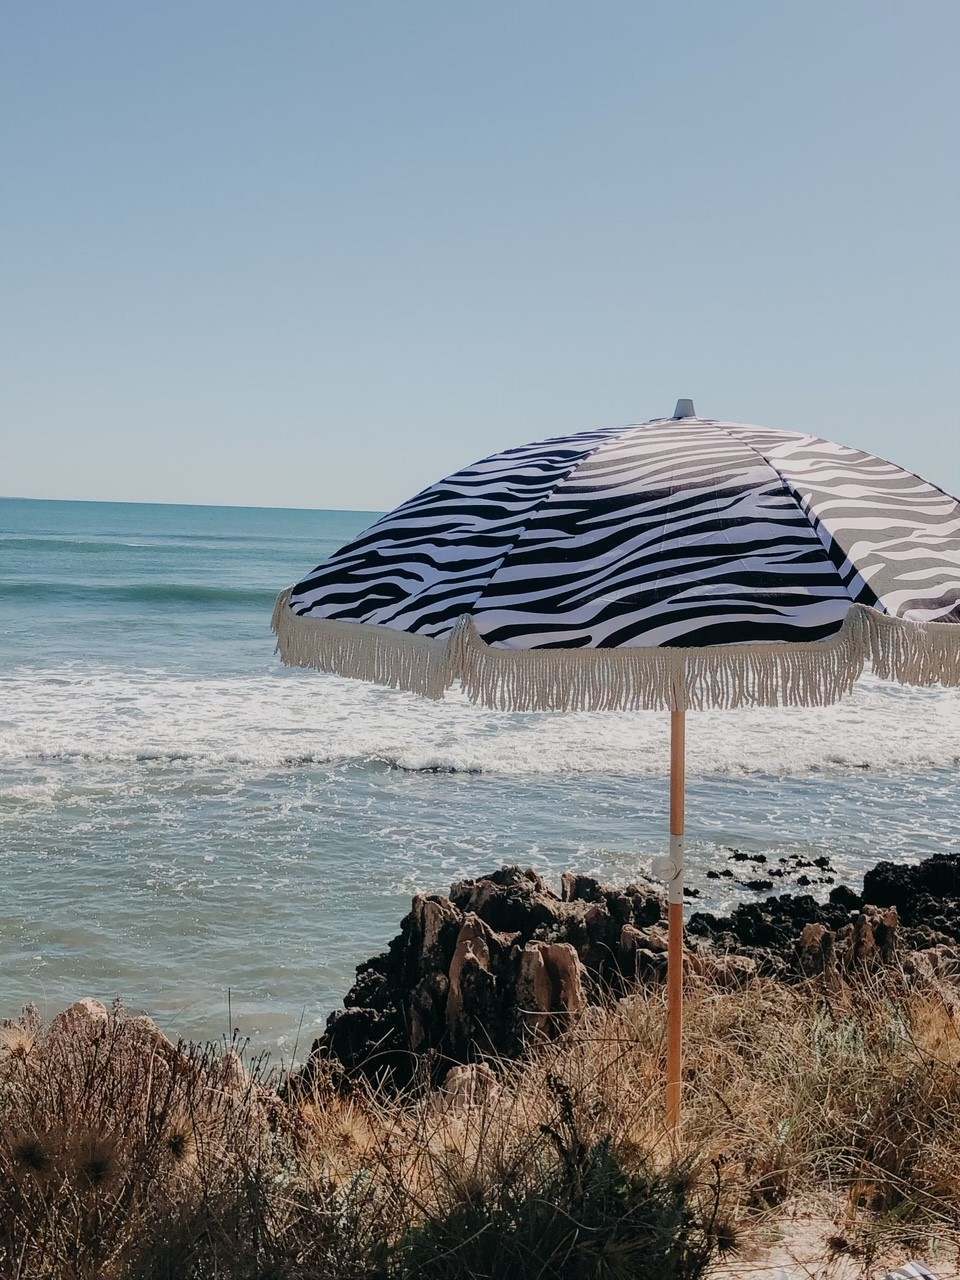 شراء مظلة هامشية بطول 6.5 قدم قابلة للإمالة للشاطئ ومظلات فناء تجارية خارجية ومظلة حديقة ,مظلة هامشية بطول 6.5 قدم قابلة للإمالة للشاطئ ومظلات فناء تجارية خارجية ومظلة حديقة الأسعار ·مظلة هامشية بطول 6.5 قدم قابلة للإمالة للشاطئ ومظلات فناء تجارية خارجية ومظلة حديقة العلامات التجارية ,مظلة هامشية بطول 6.5 قدم قابلة للإمالة للشاطئ ومظلات فناء تجارية خارجية ومظلة حديقة الصانع ,مظلة هامشية بطول 6.5 قدم قابلة للإمالة للشاطئ ومظلات فناء تجارية خارجية ومظلة حديقة اقتباس ·مظلة هامشية بطول 6.5 قدم قابلة للإمالة للشاطئ ومظلات فناء تجارية خارجية ومظلة حديقة الشركة